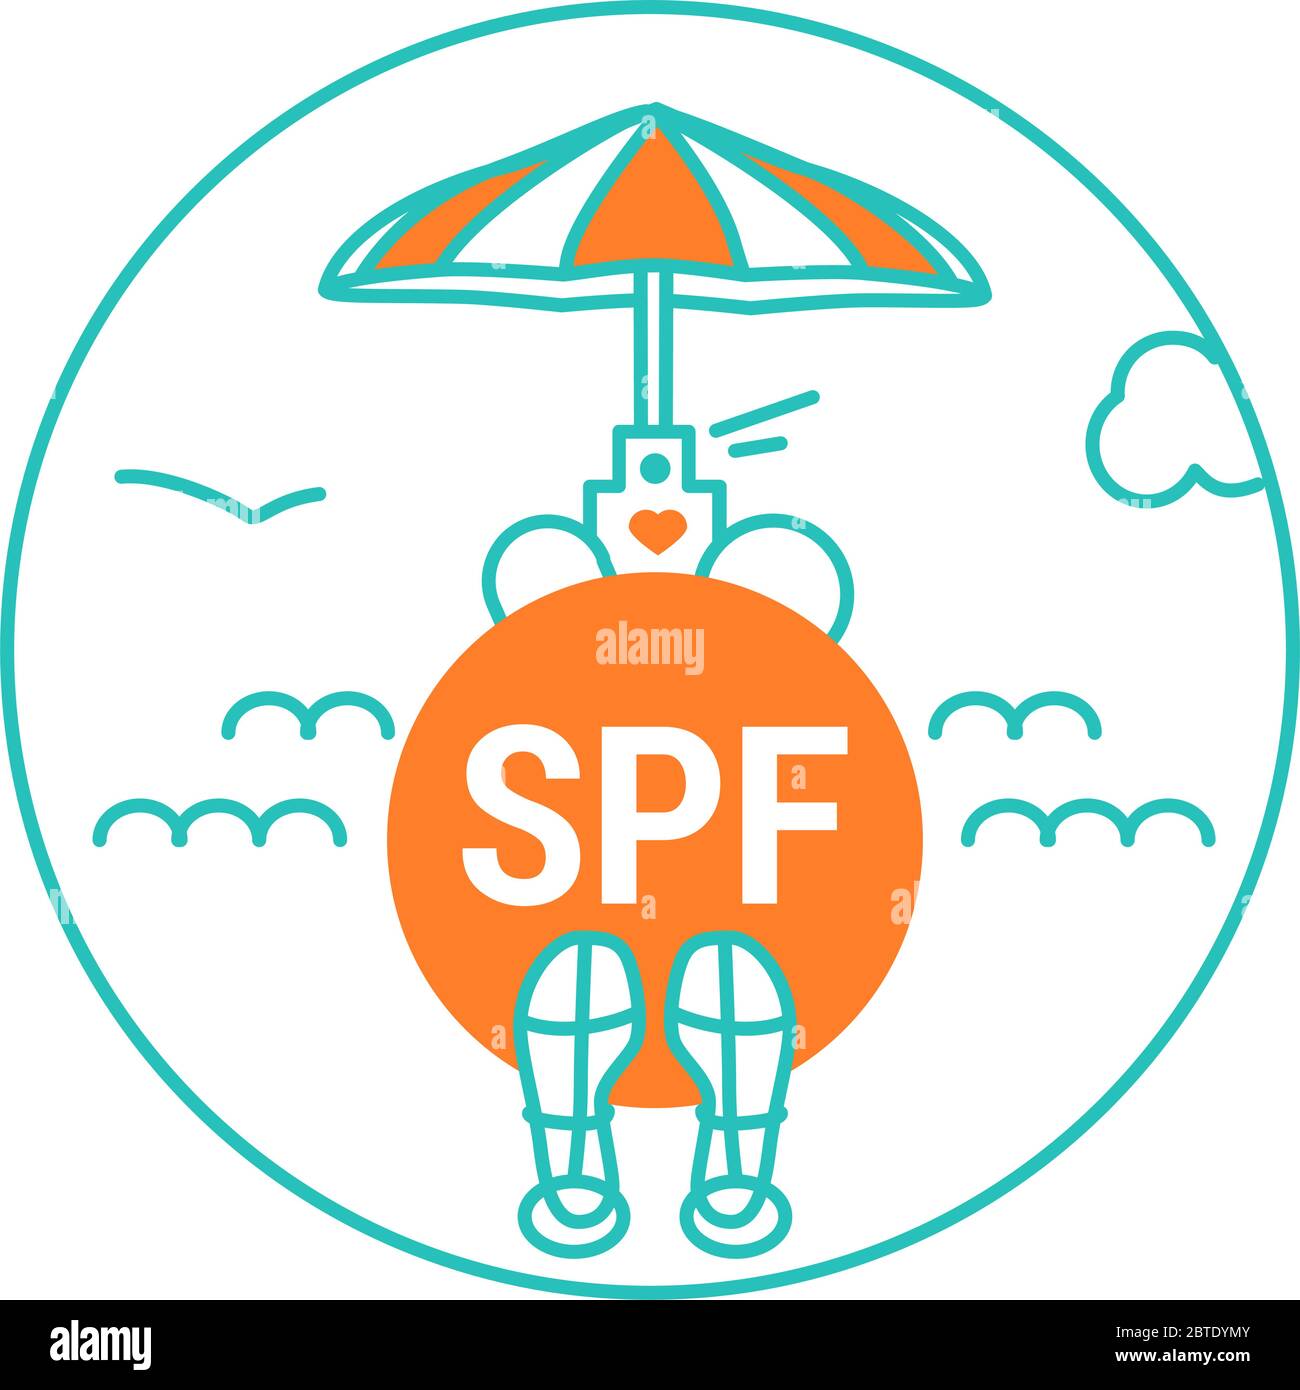 Icône, logo, badge avec mot SPF, protéger du soleil, lumière du soleil. Vacances d'été Illustration, crème solaire, lotion, huile, parapluie orange, sandales Illustration de Vecteur